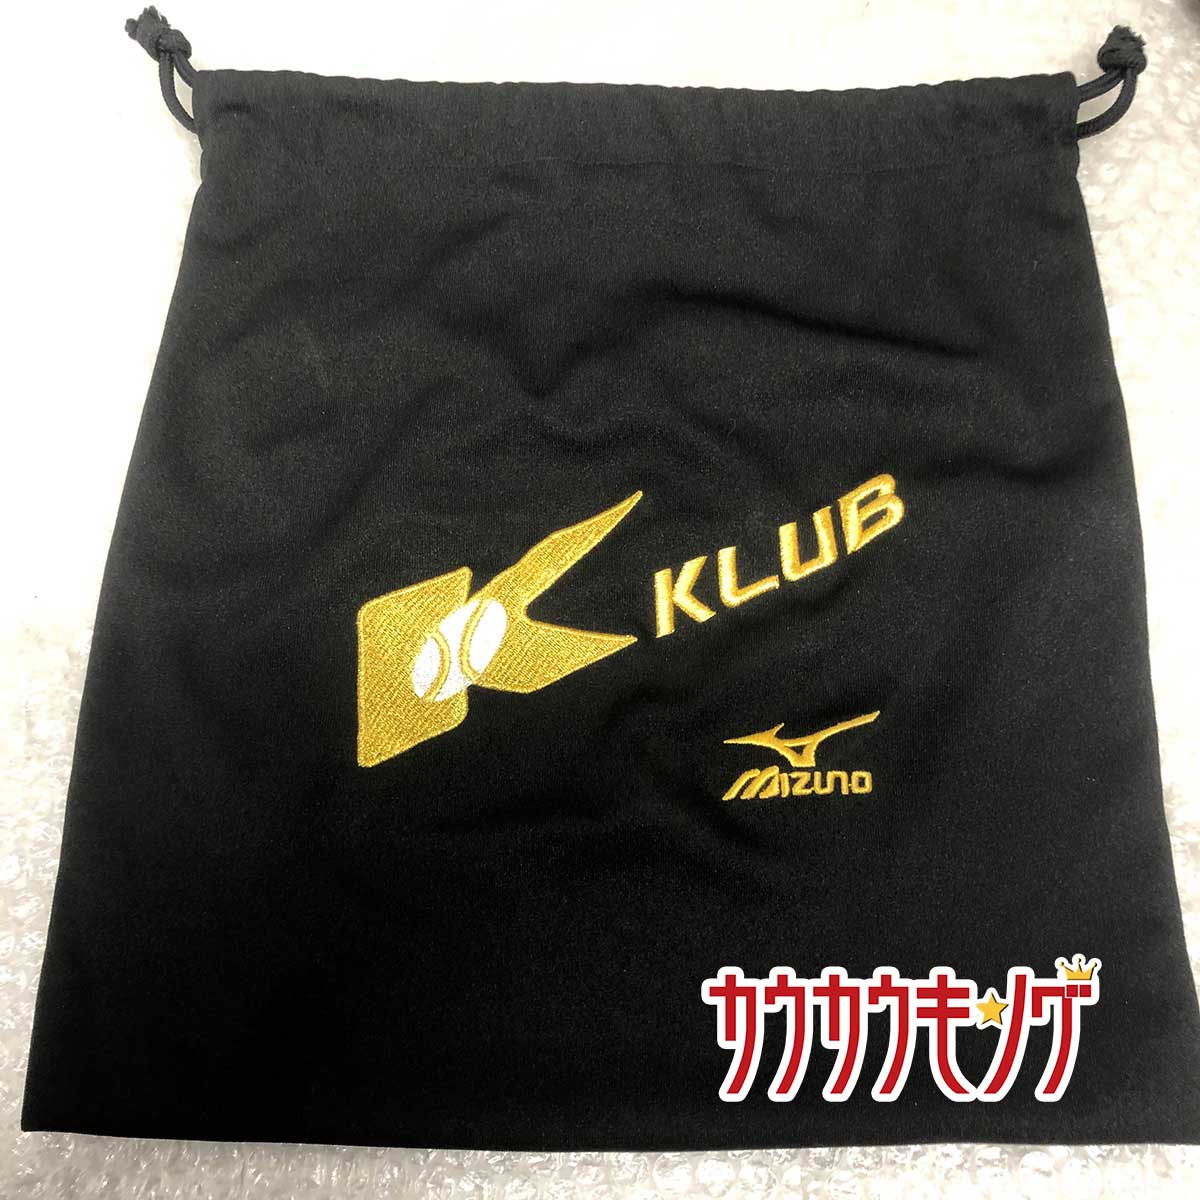 【中古】ミズノプロ グラブ袋 K-KLUB レア 野球 グローブ袋 MIZUNO PRO